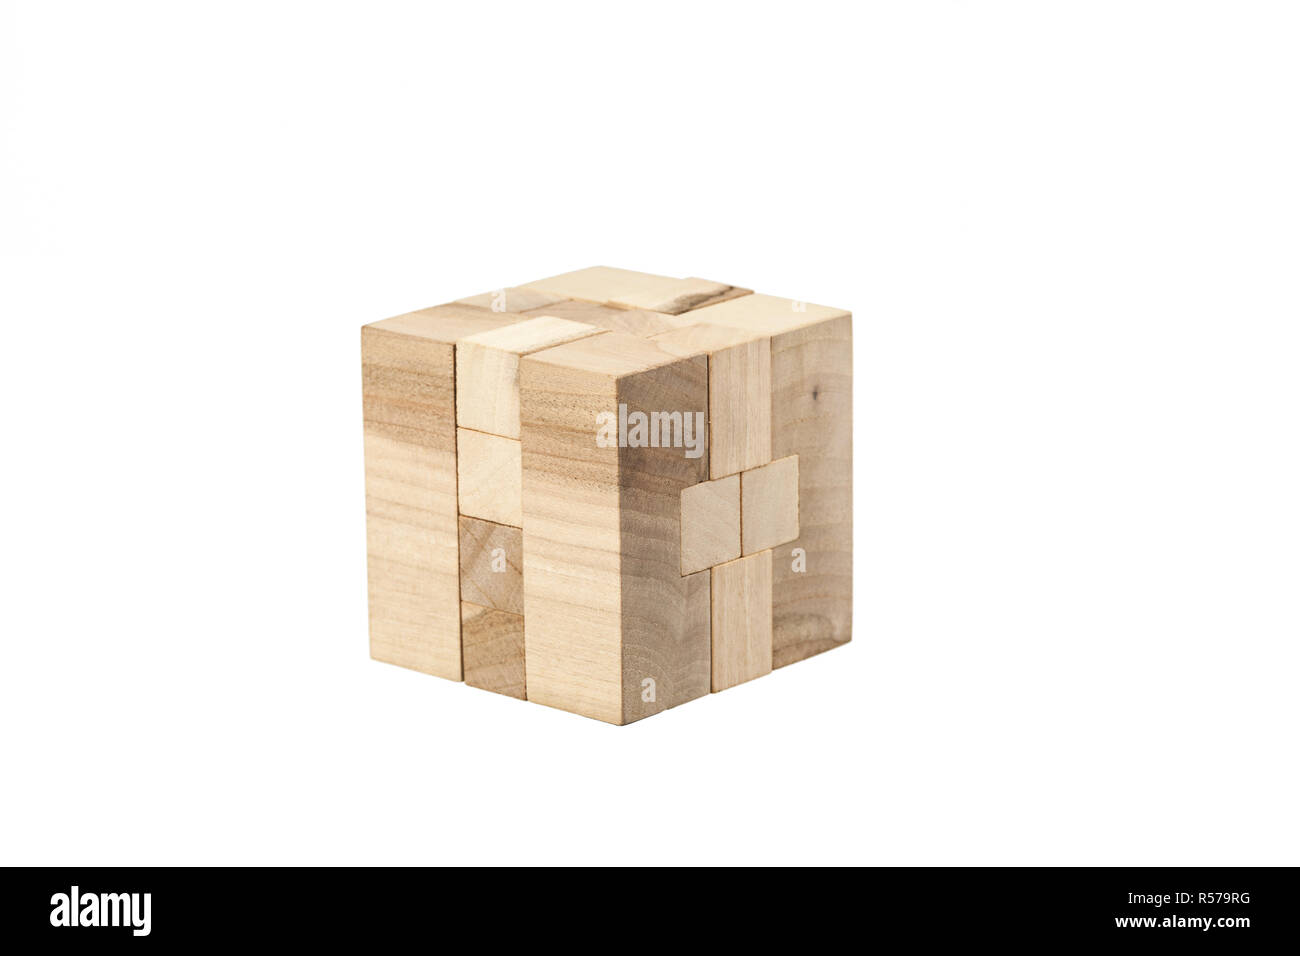 La madera - juego de puzzle con bloques Fotografía de stock Alamy